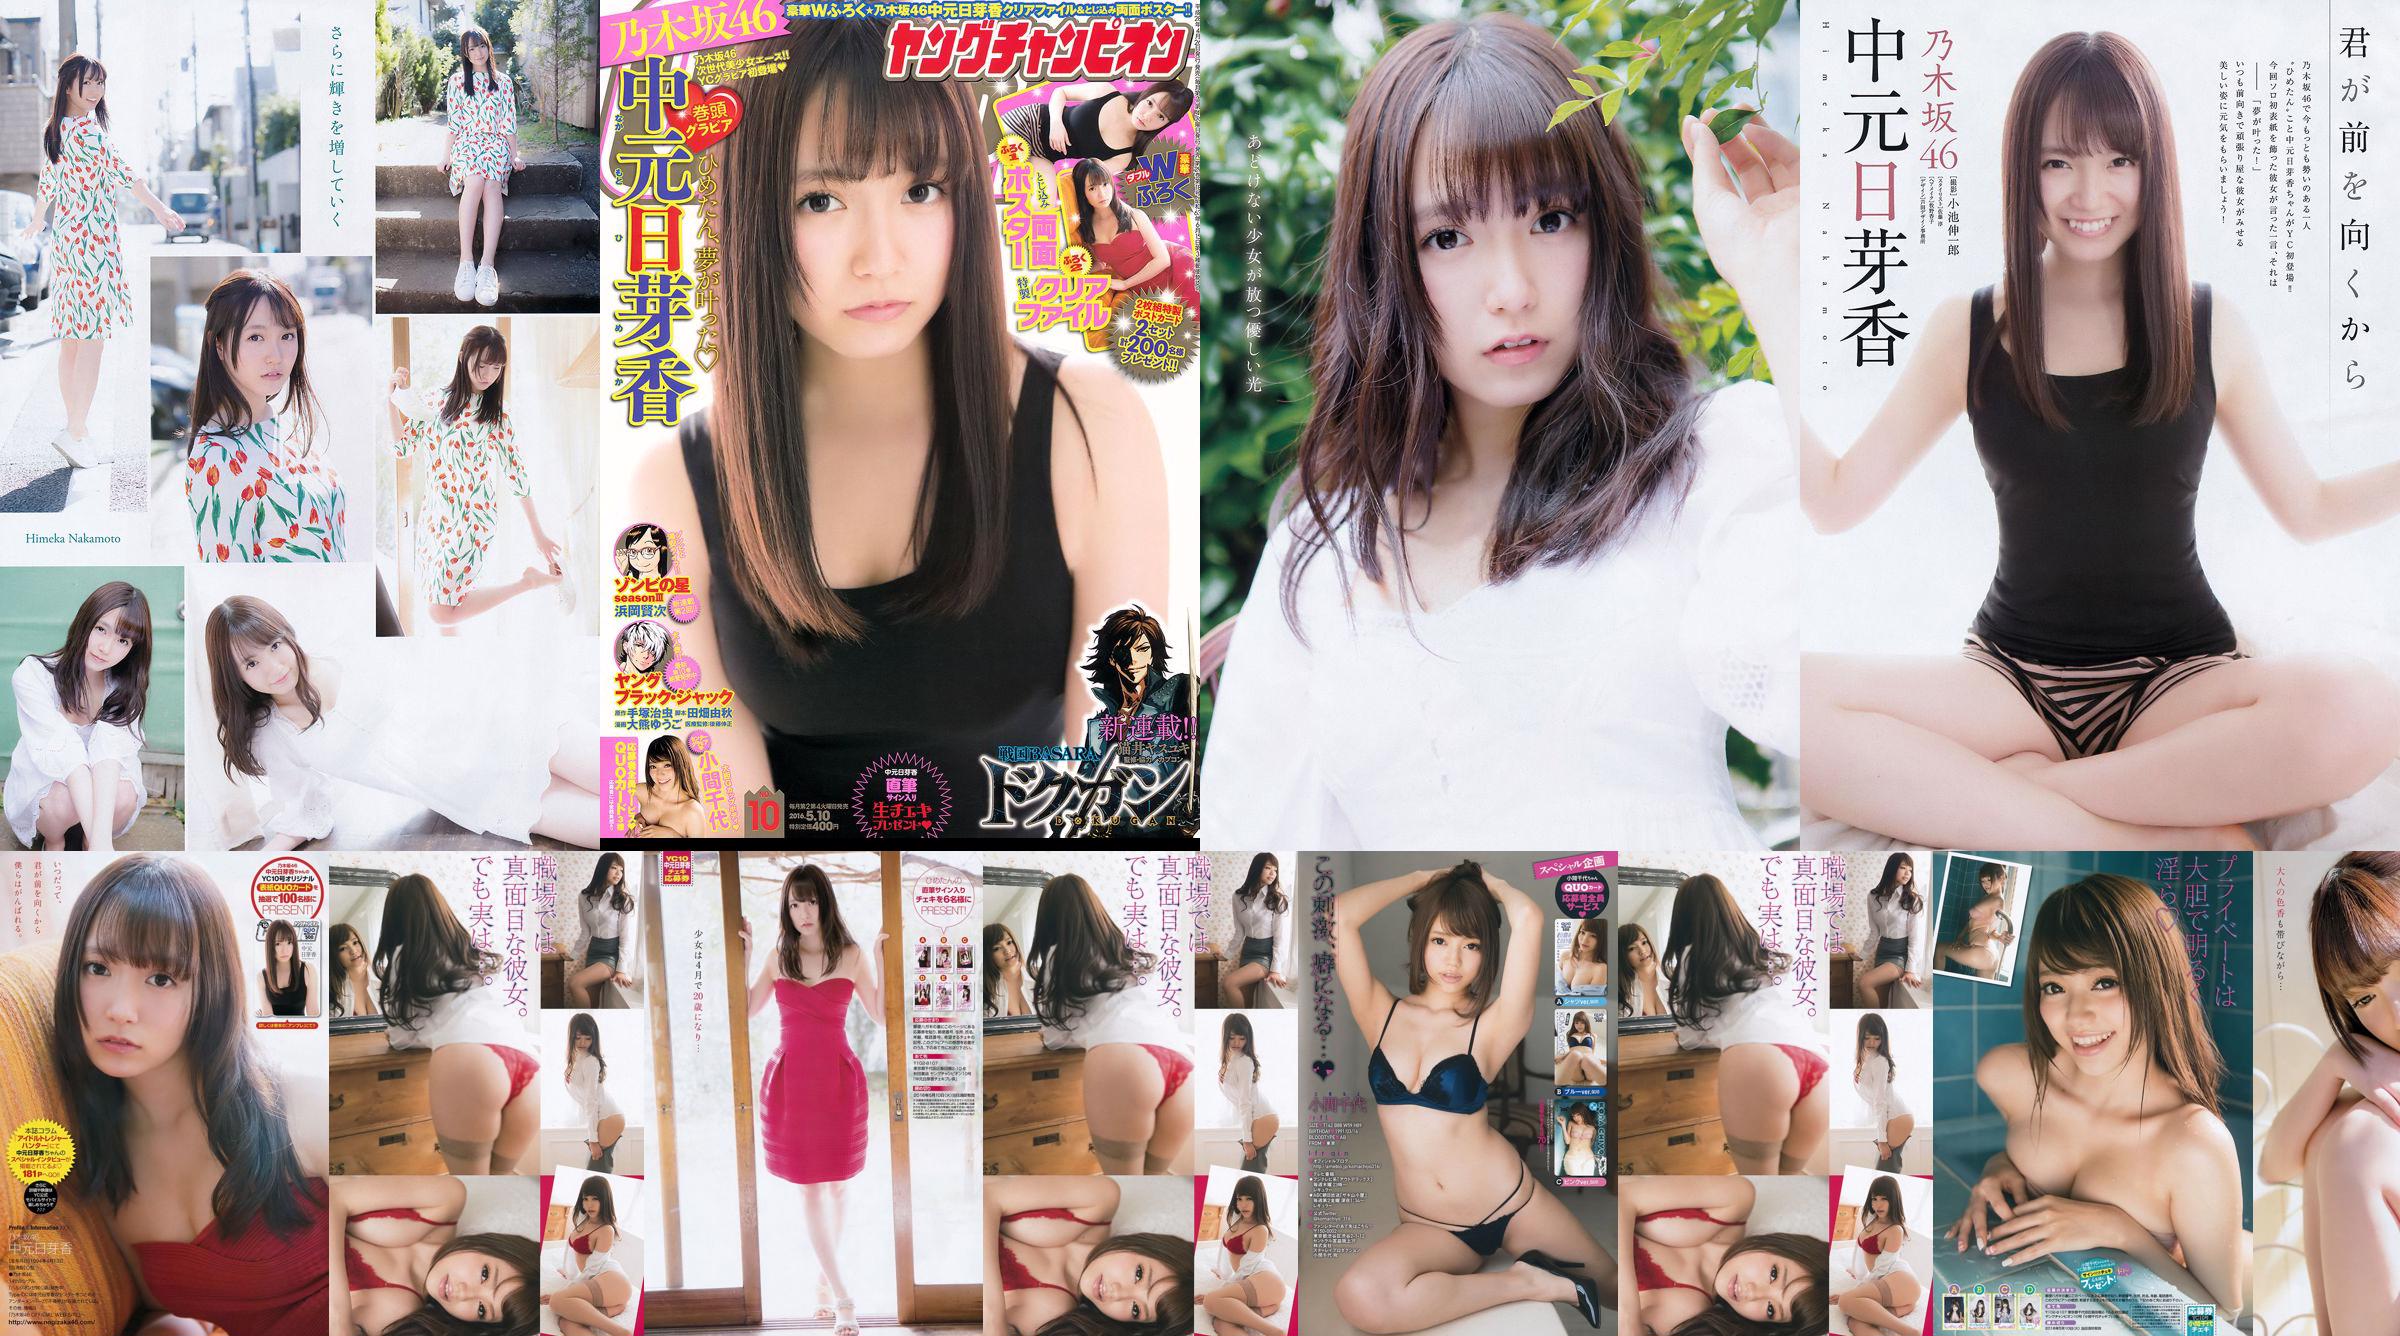 [Jeune Champion] Nakamoto Nichiko Koma Chiyo 2016 Magazine photo n ° 10 No.71d1da Page 1